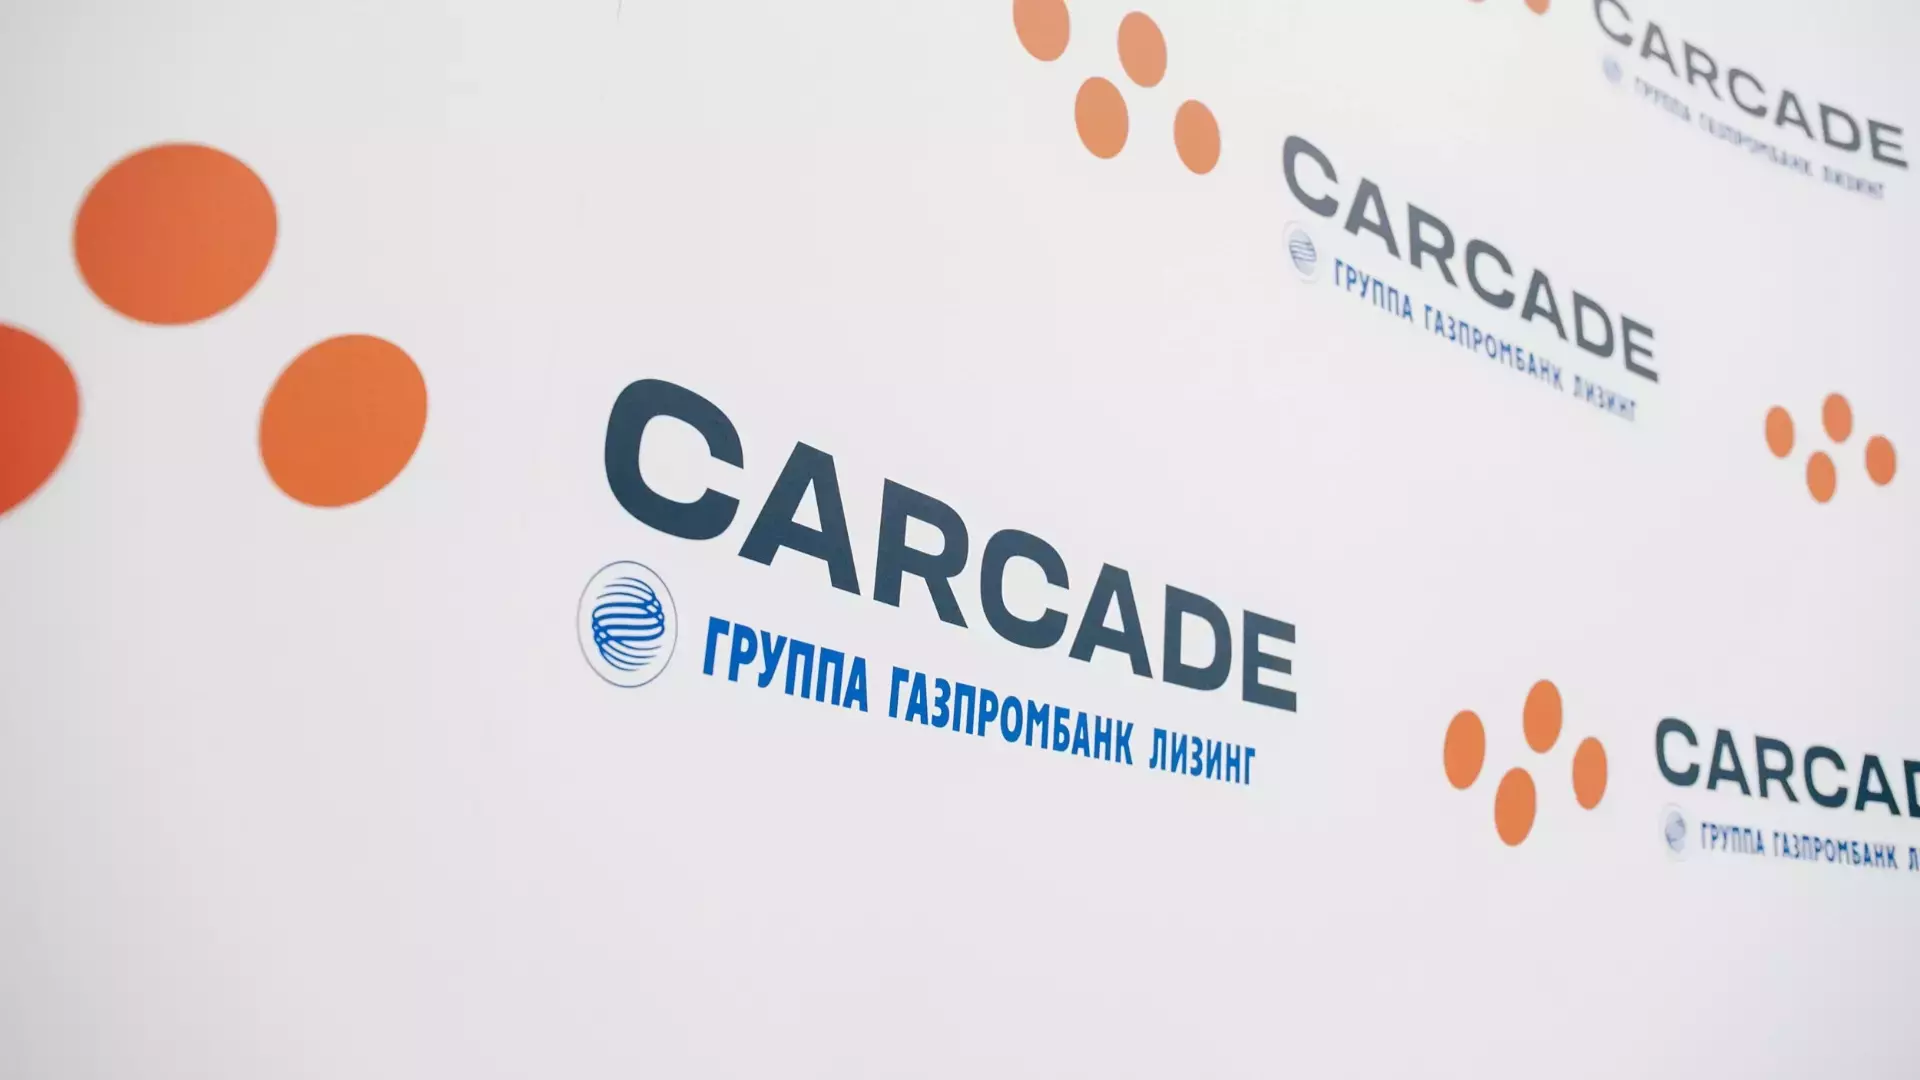 Субсидия до миллиона рублей на лизинг спецтехники от РусБизнесАвто в CARCADE